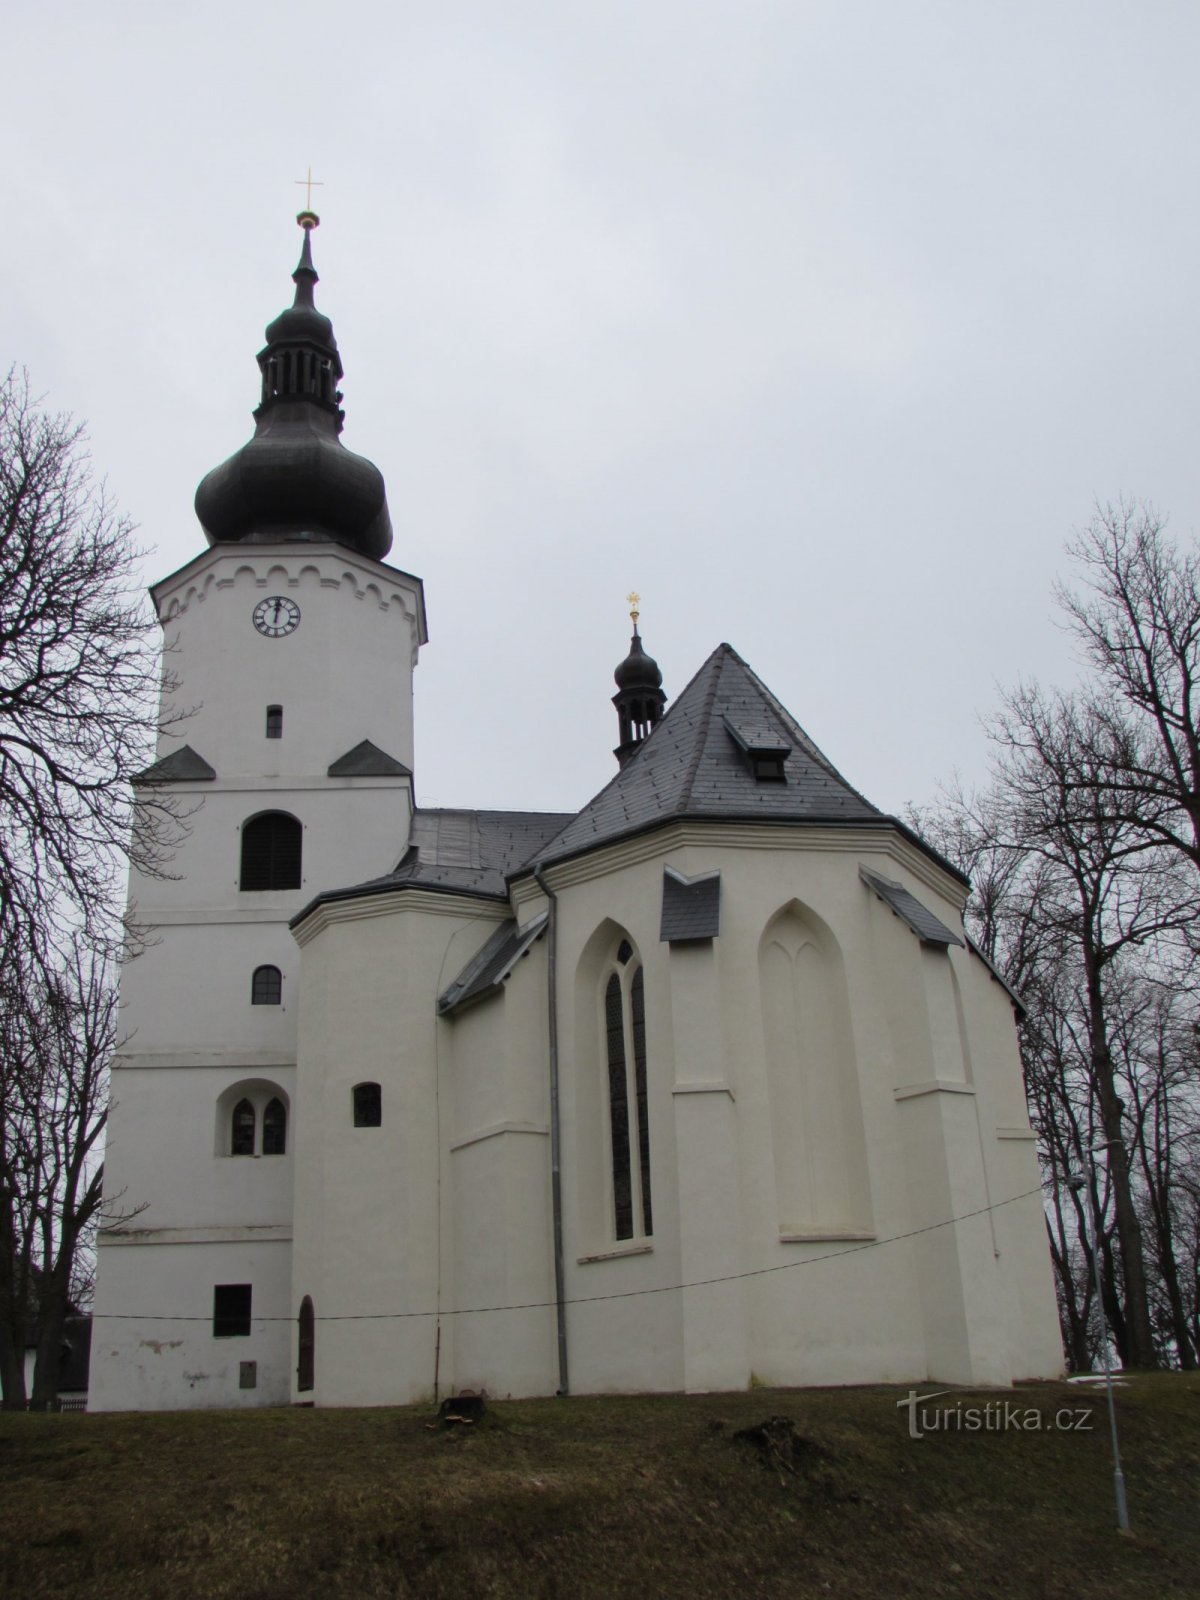 Jindřichovice, igreja de St. martinho